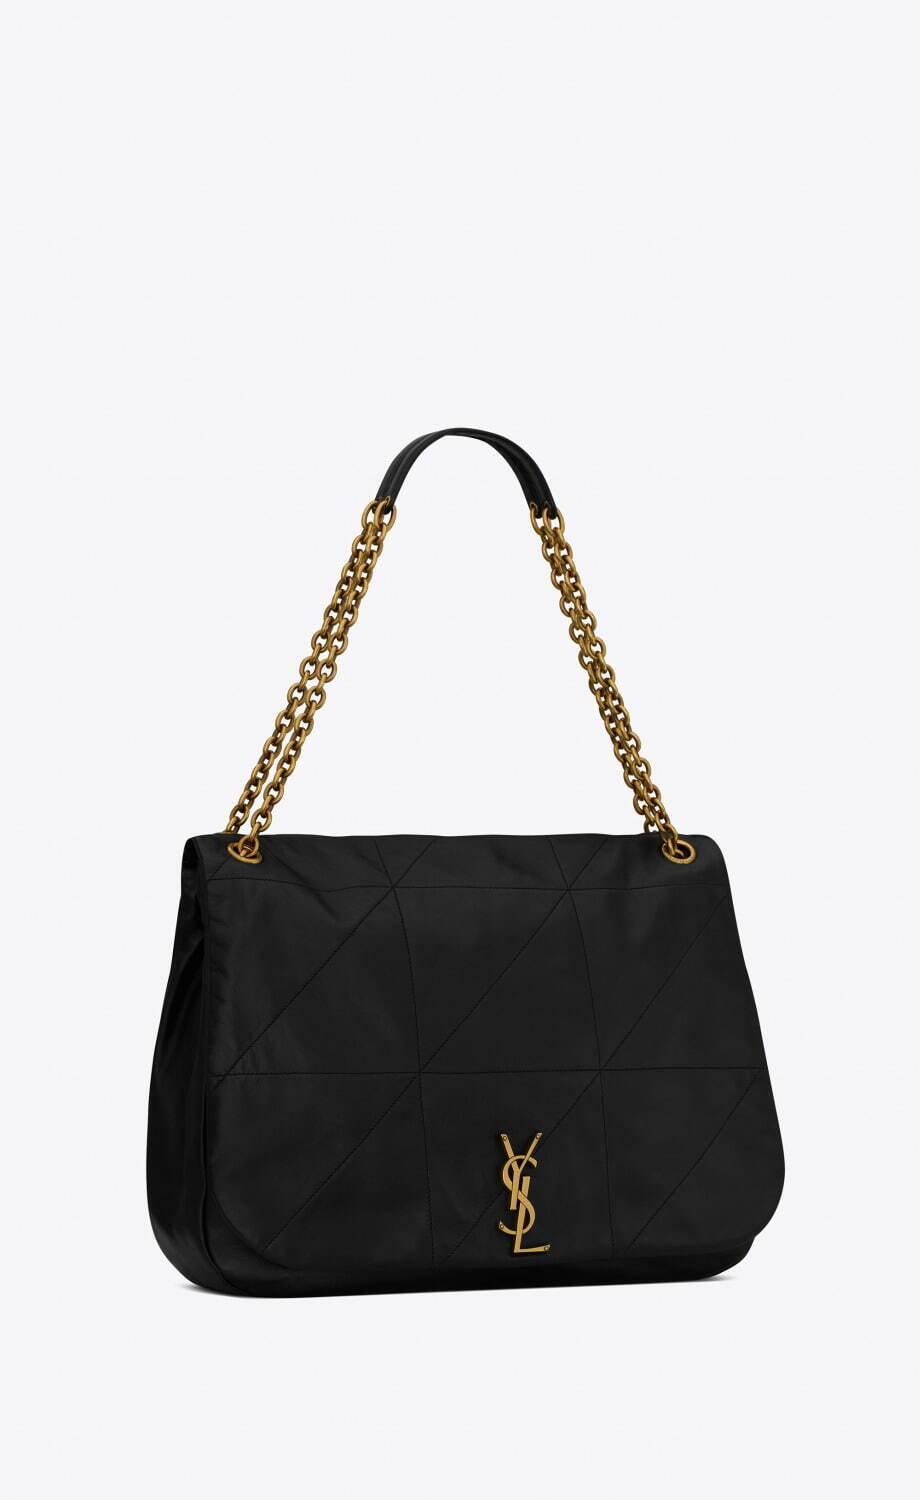 サンローラン「ジェイミー」新作チェーンバッグ、幾何学模様のステッチ